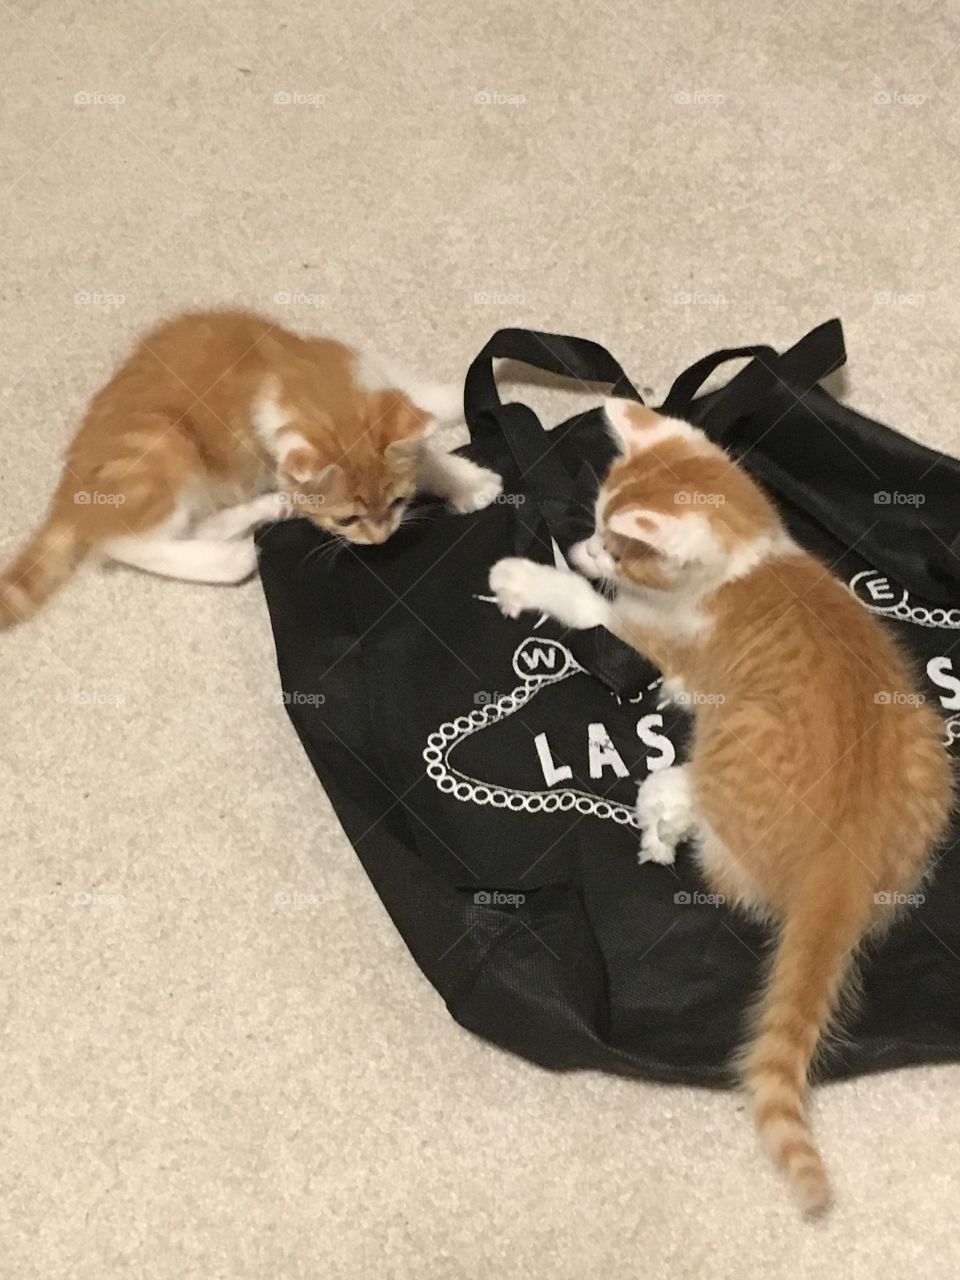 Kittens playing 